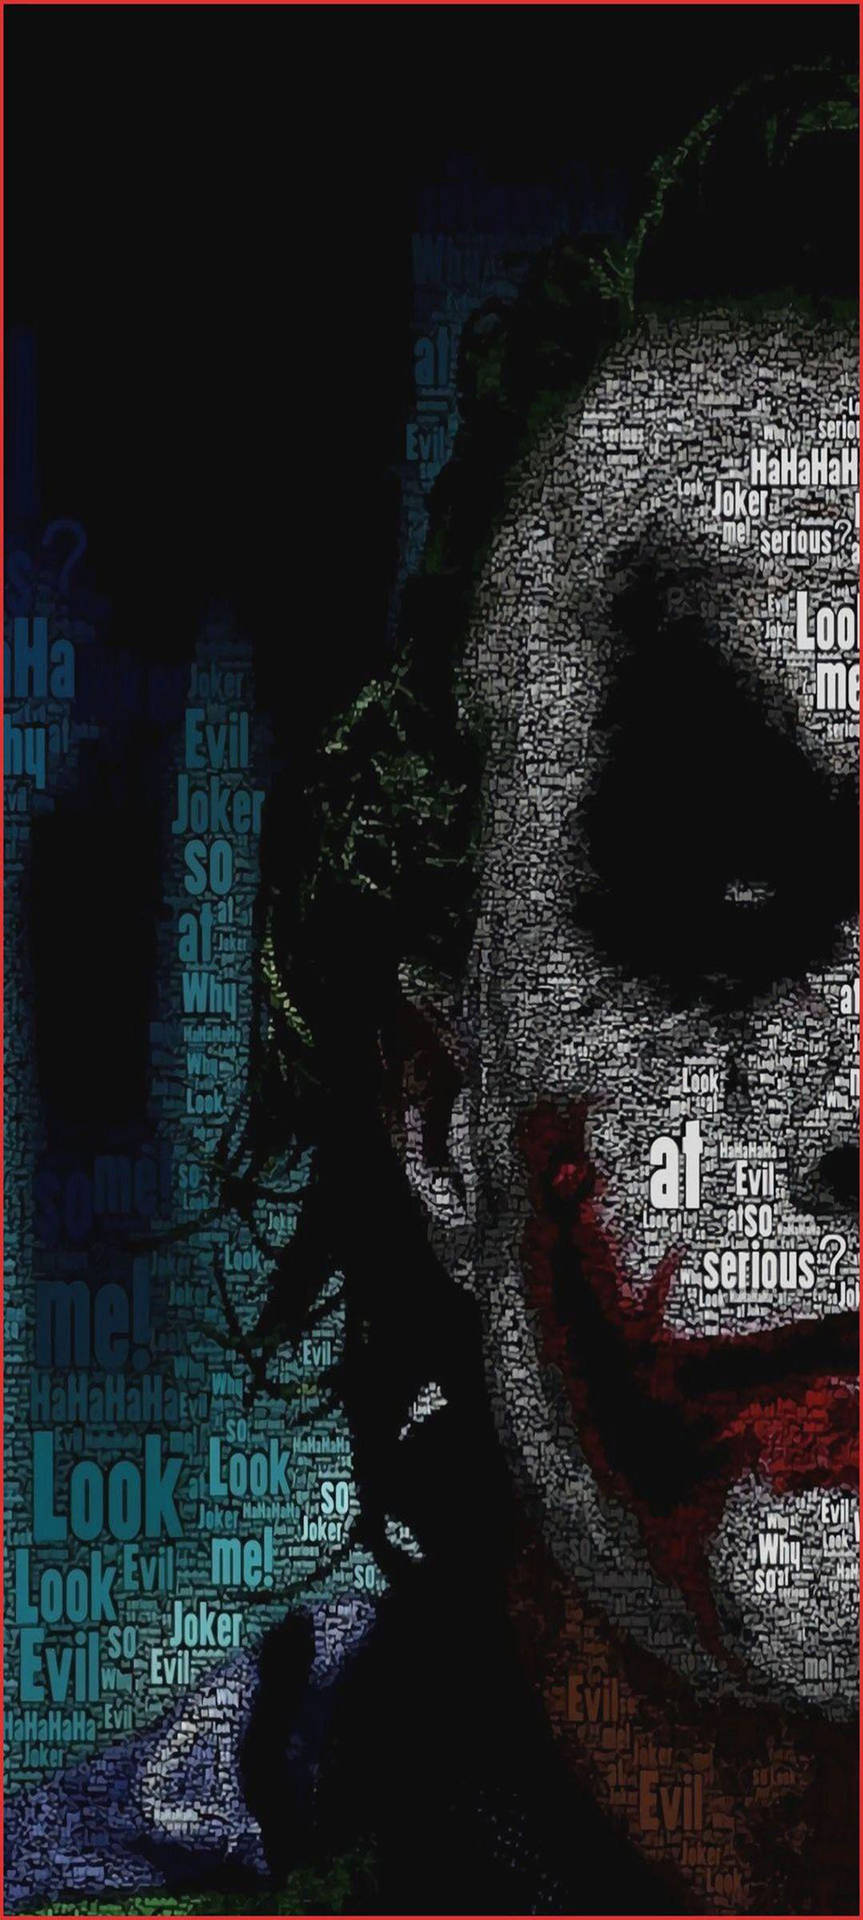 Download Aesthetic Boy Joker Wallpaper | Wallpapers.com